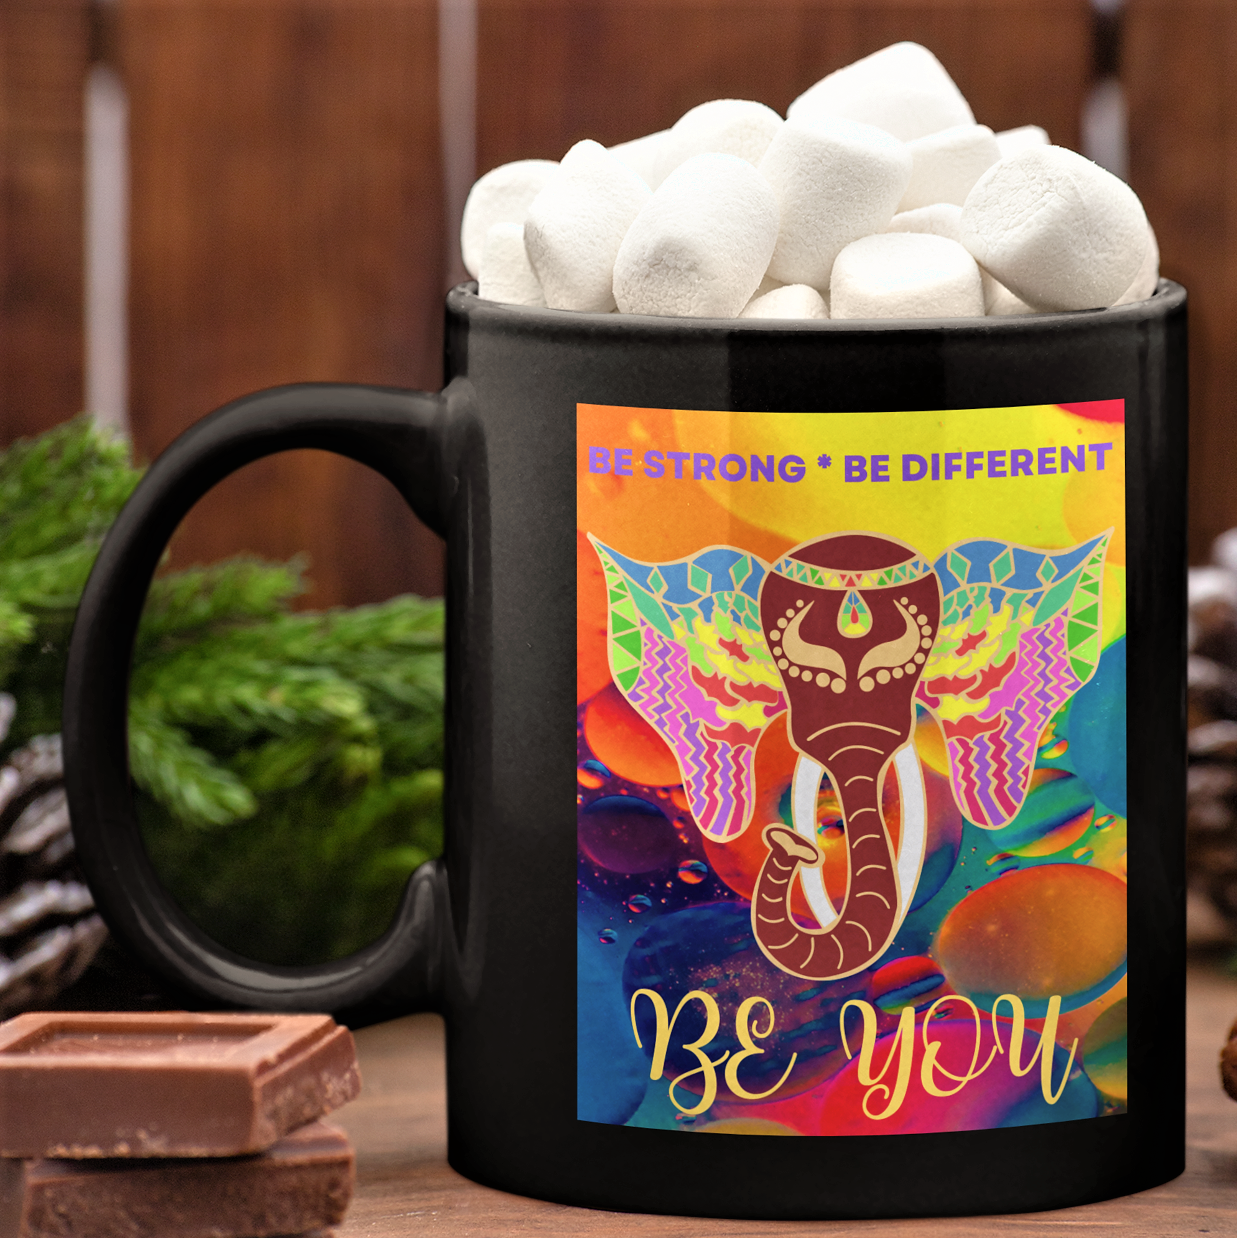 Christmas coffee mug, colorful elephant gift, the cosmos and beyond, india elephant